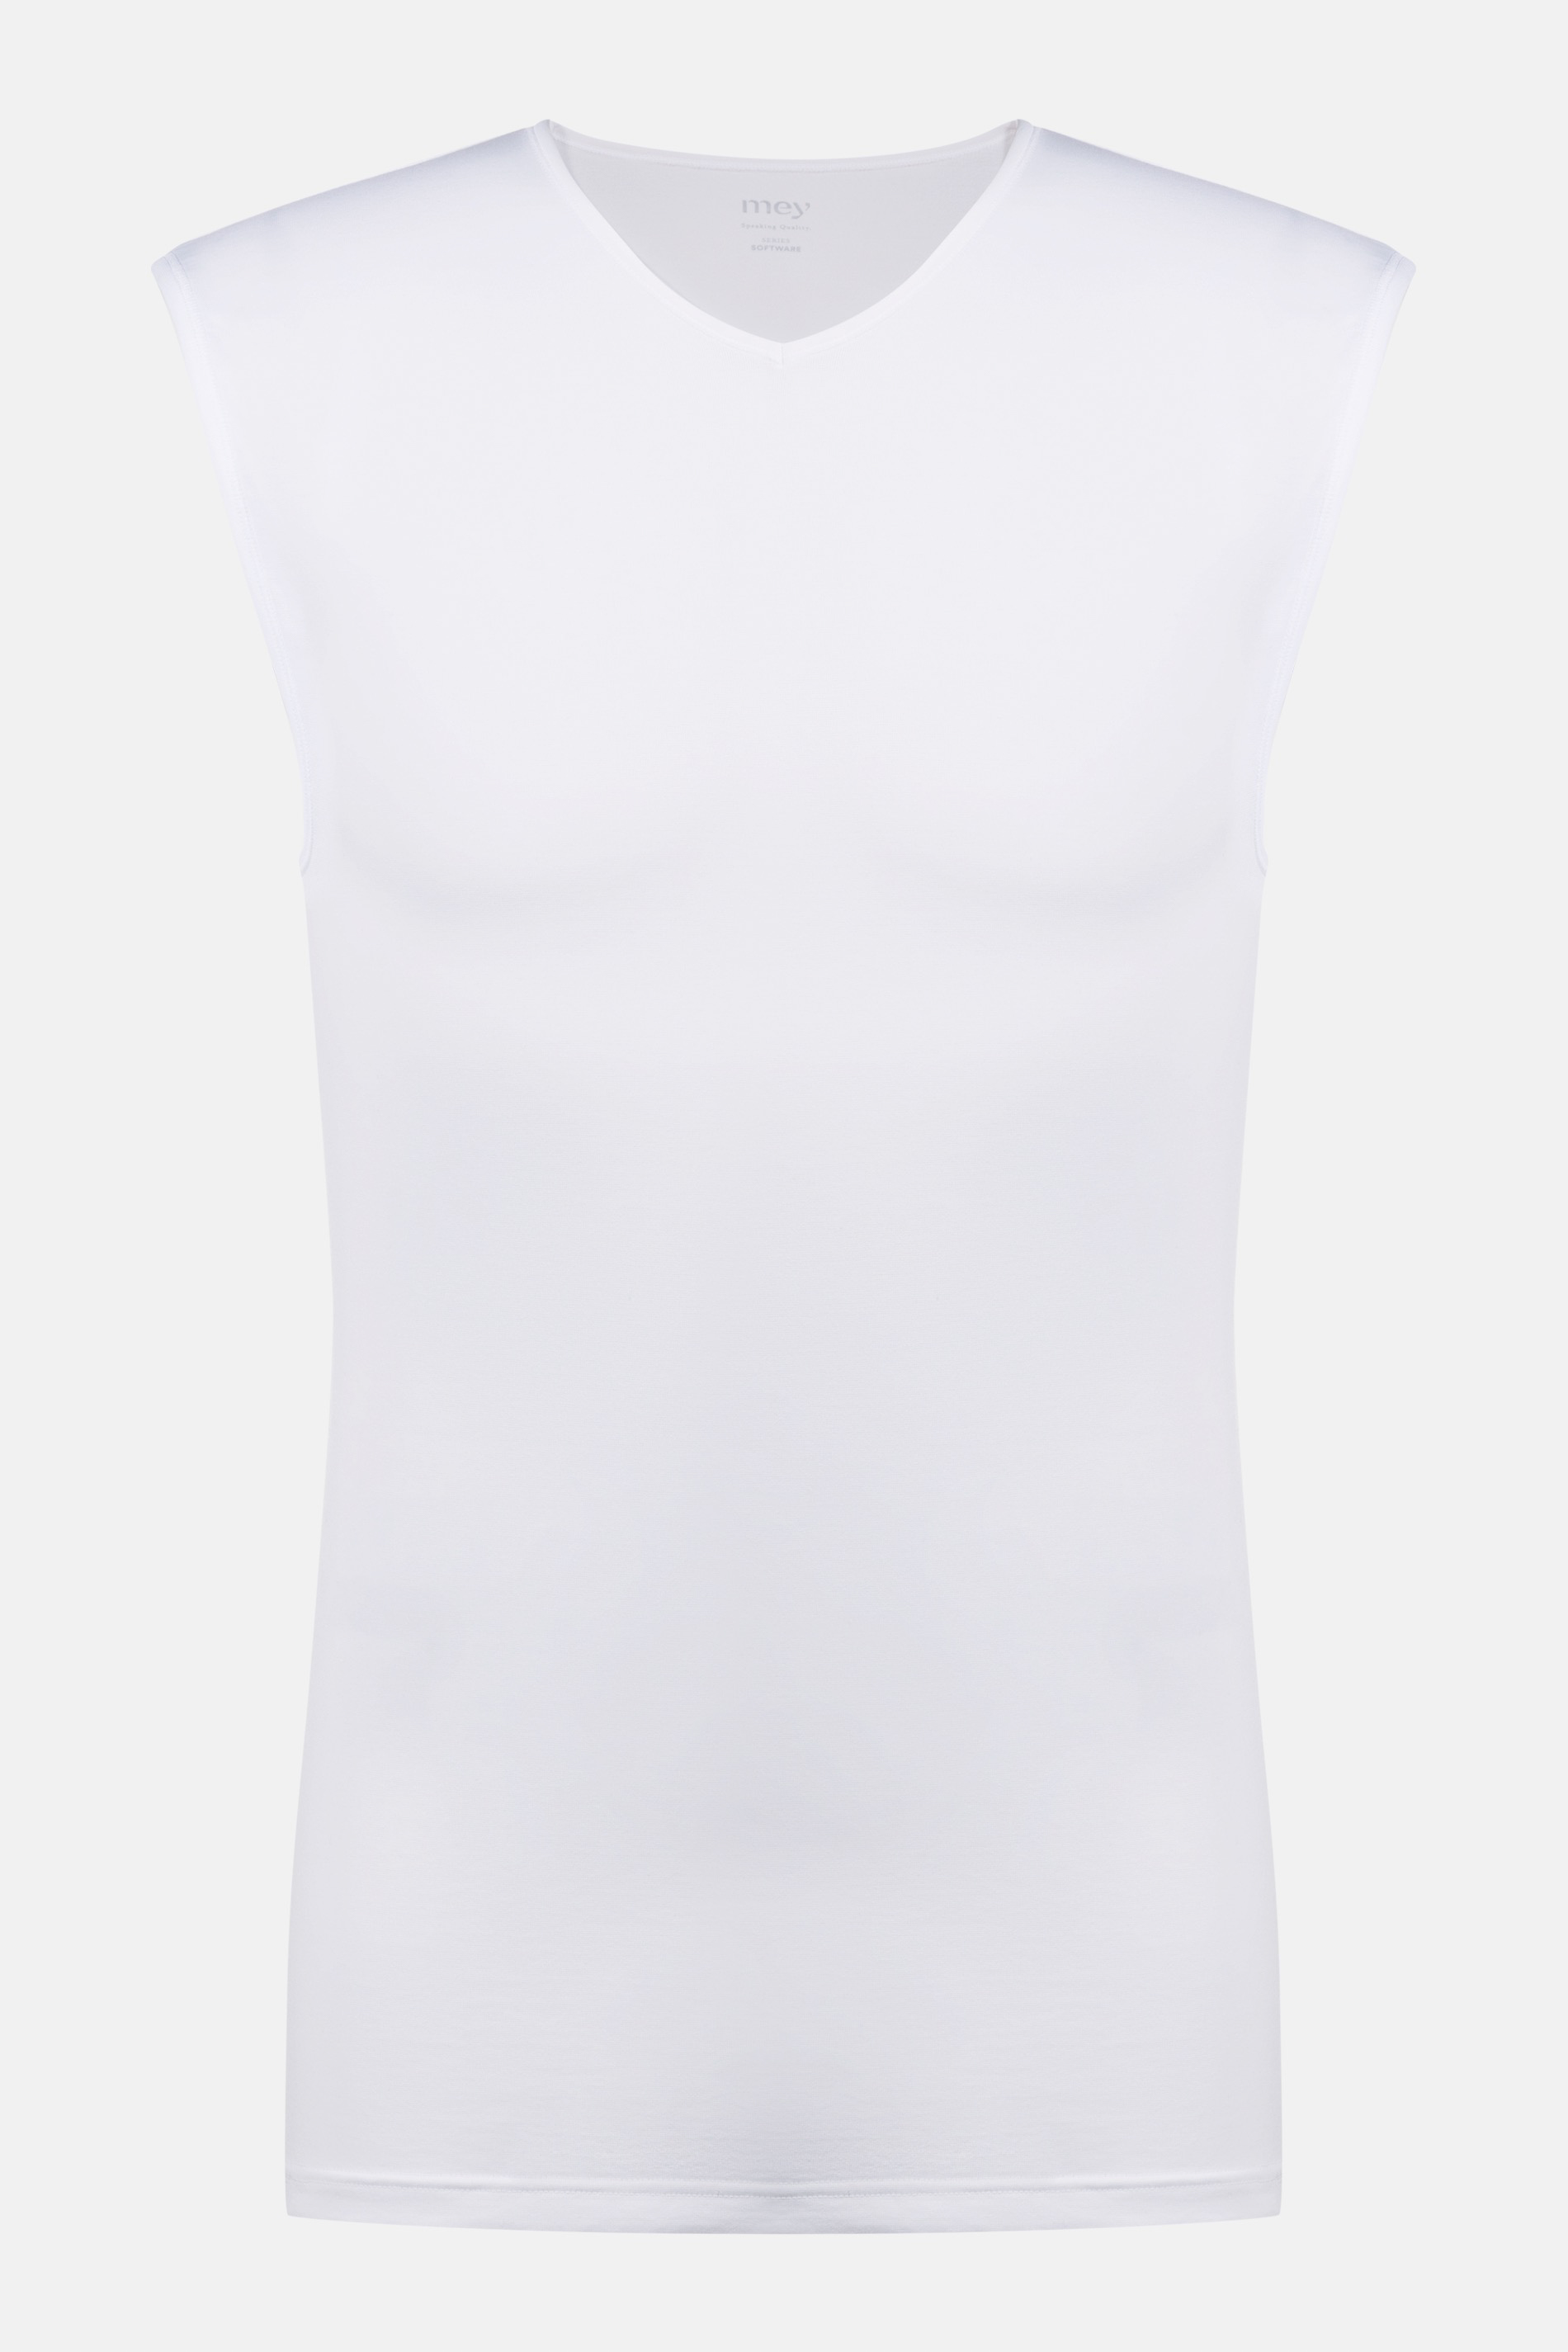 Muskel-Shirt Weiss Serie Software Freisteller | mey®